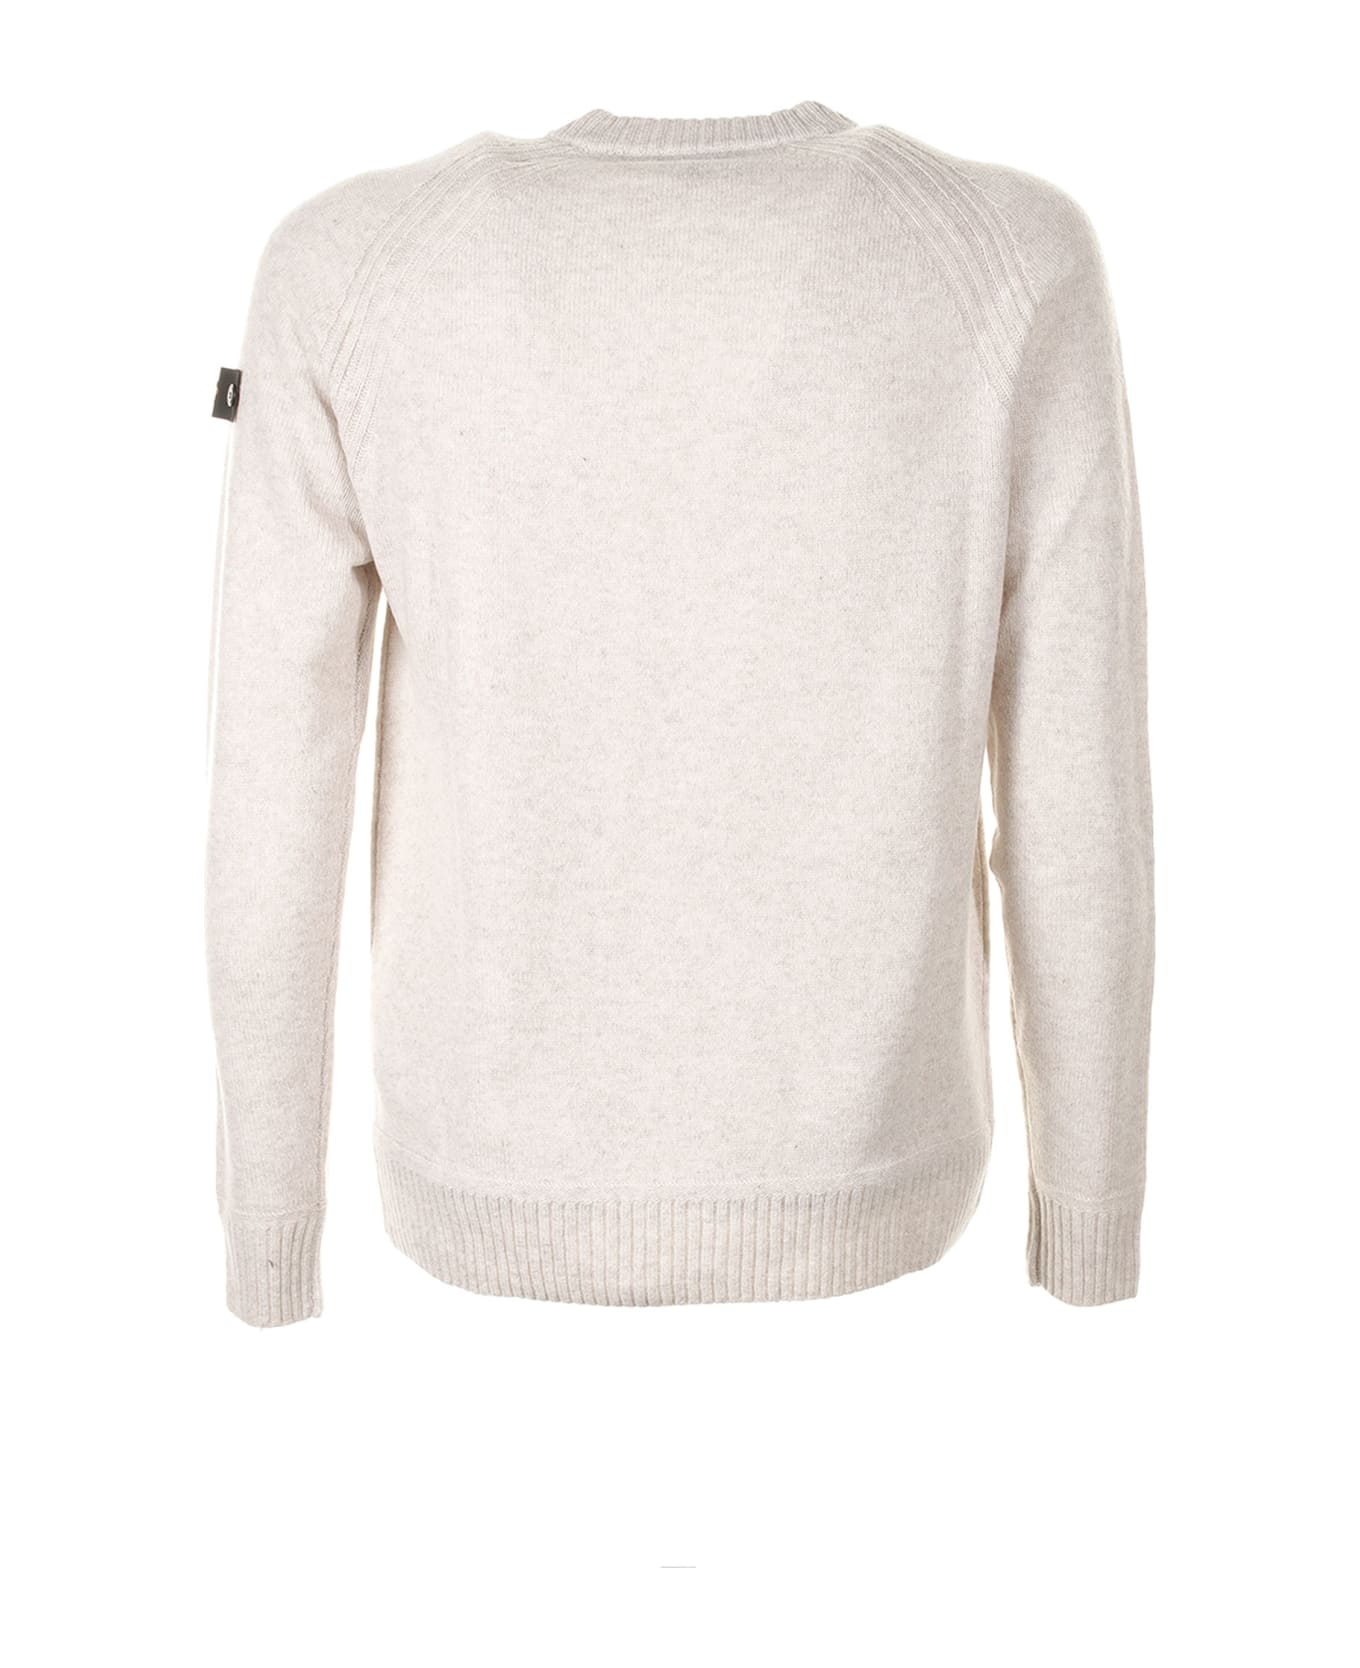 Peuterey White Crew-neck Sweater With Logo - FIOCCO AVENA ニットウェア